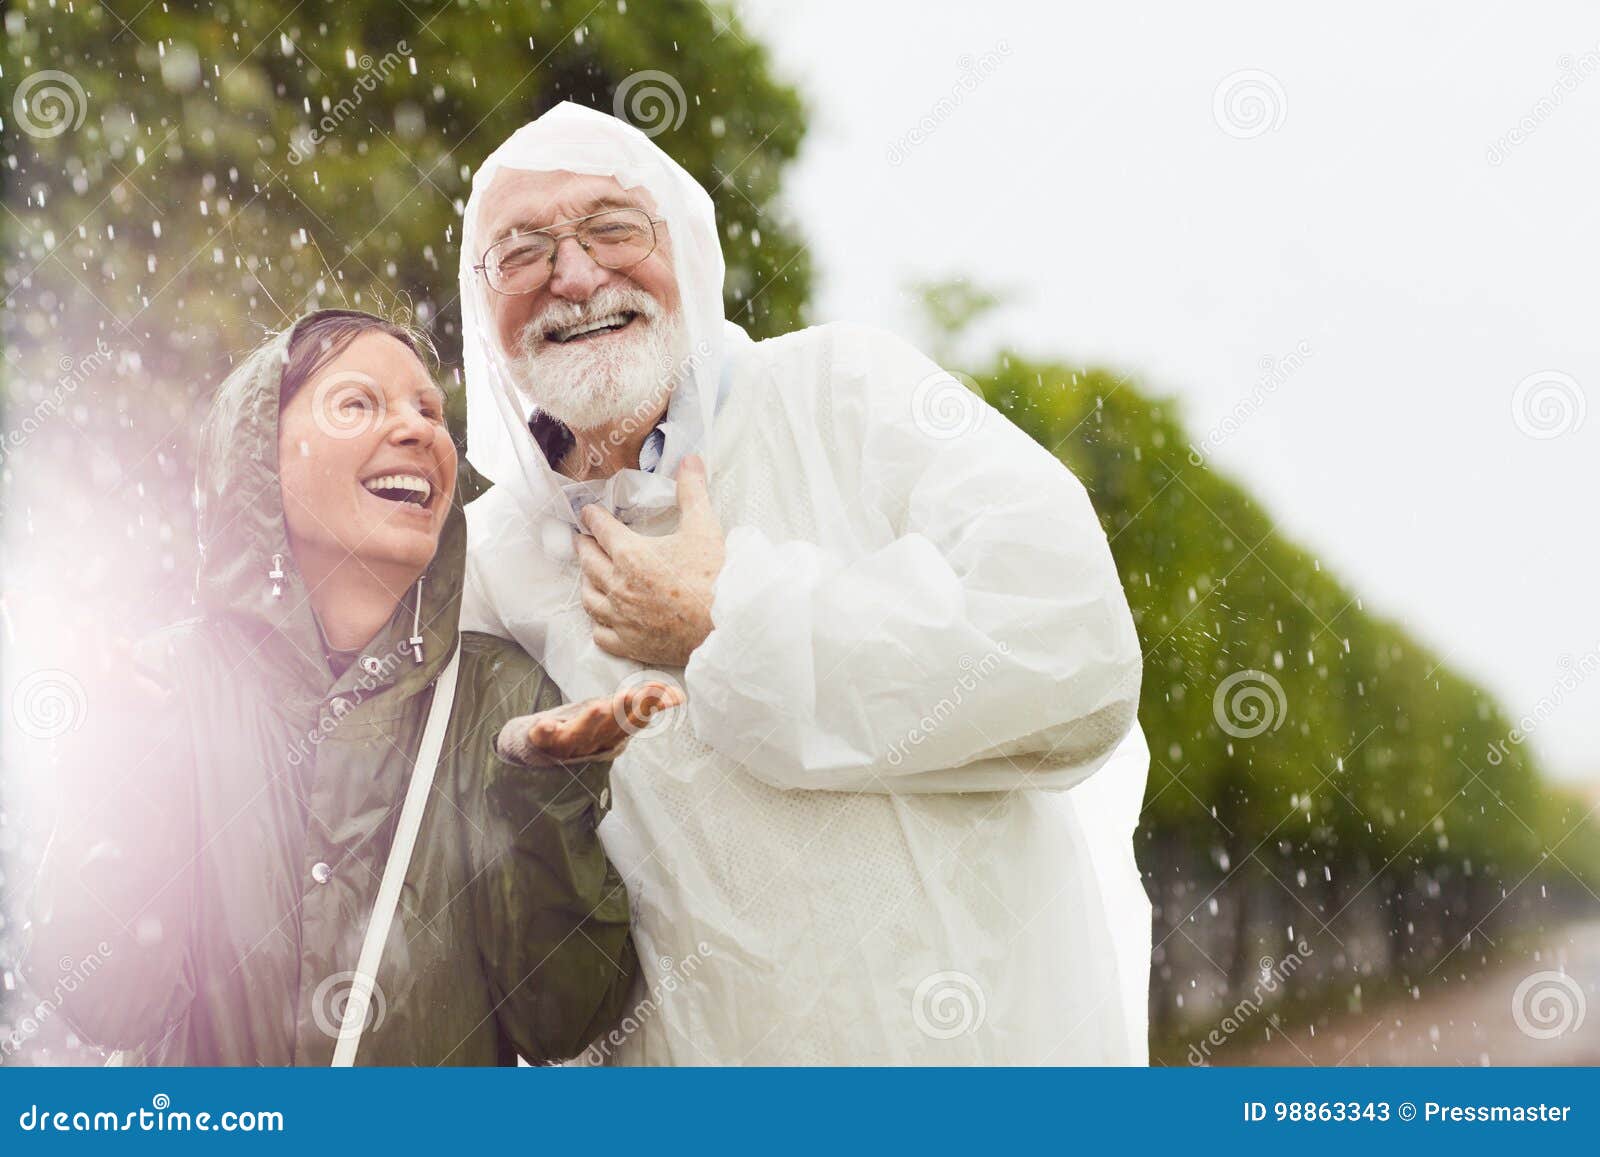 Пожилой смех. Пожилые люди смеются. Смеющийся старик фото. Пожилые люди смеются картинки. Человек под дождем счастливый пожилой.